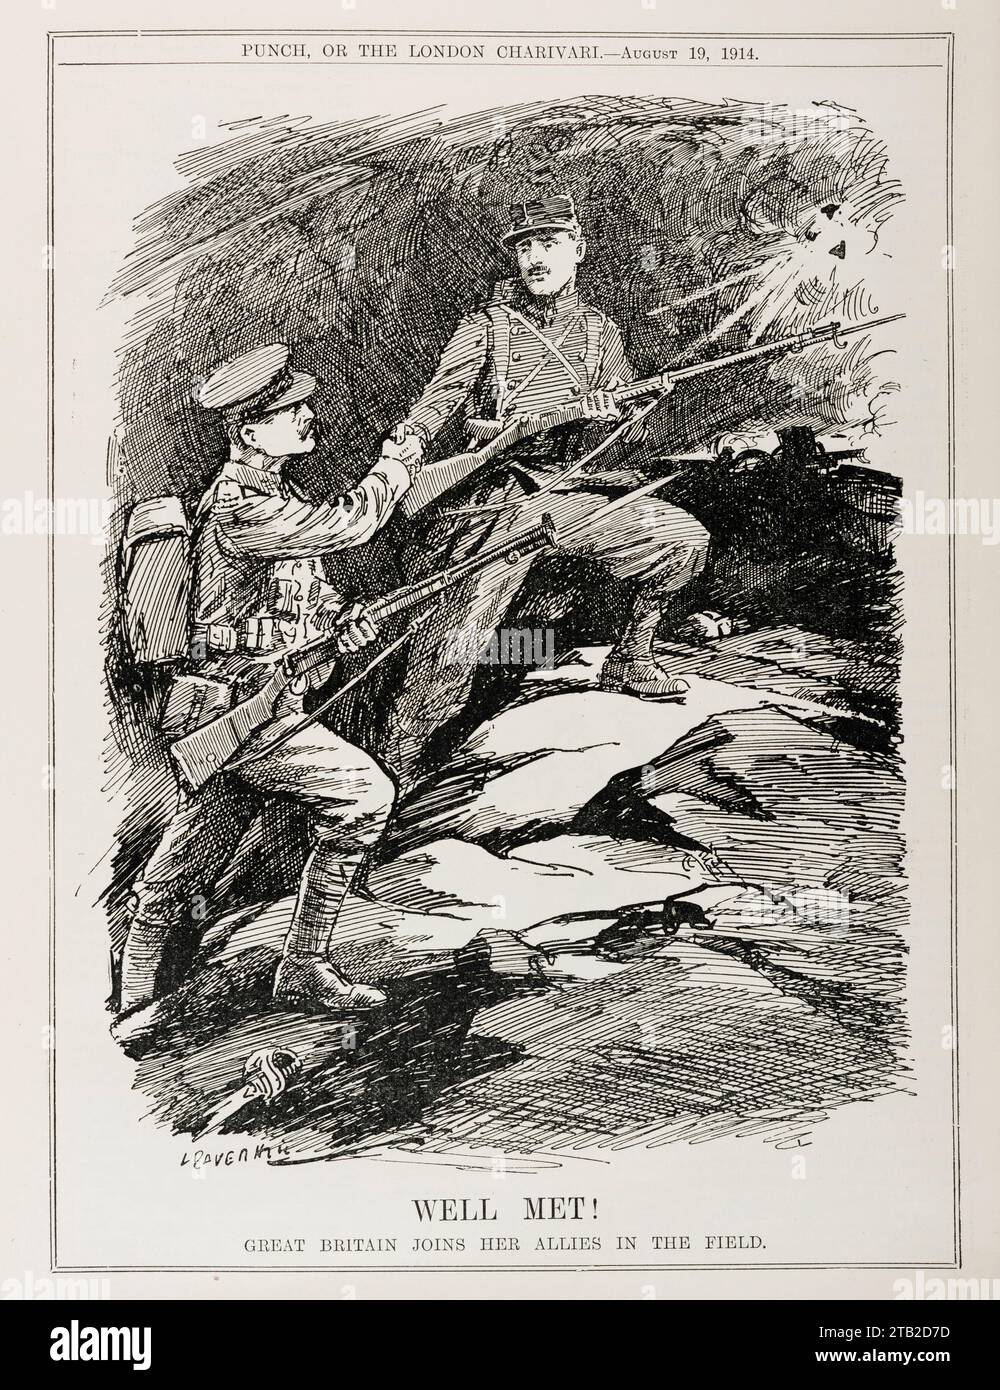 Une caricature d'août 1914 du magazine Punch, marquant la déclaration de guerre de la Grande-Bretagne à l'Allemagne (4 août 1914) et son entrée dans la première Guerre mondiale. Un soldat britannique accueille un soldat français sur le front occidental Banque D'Images